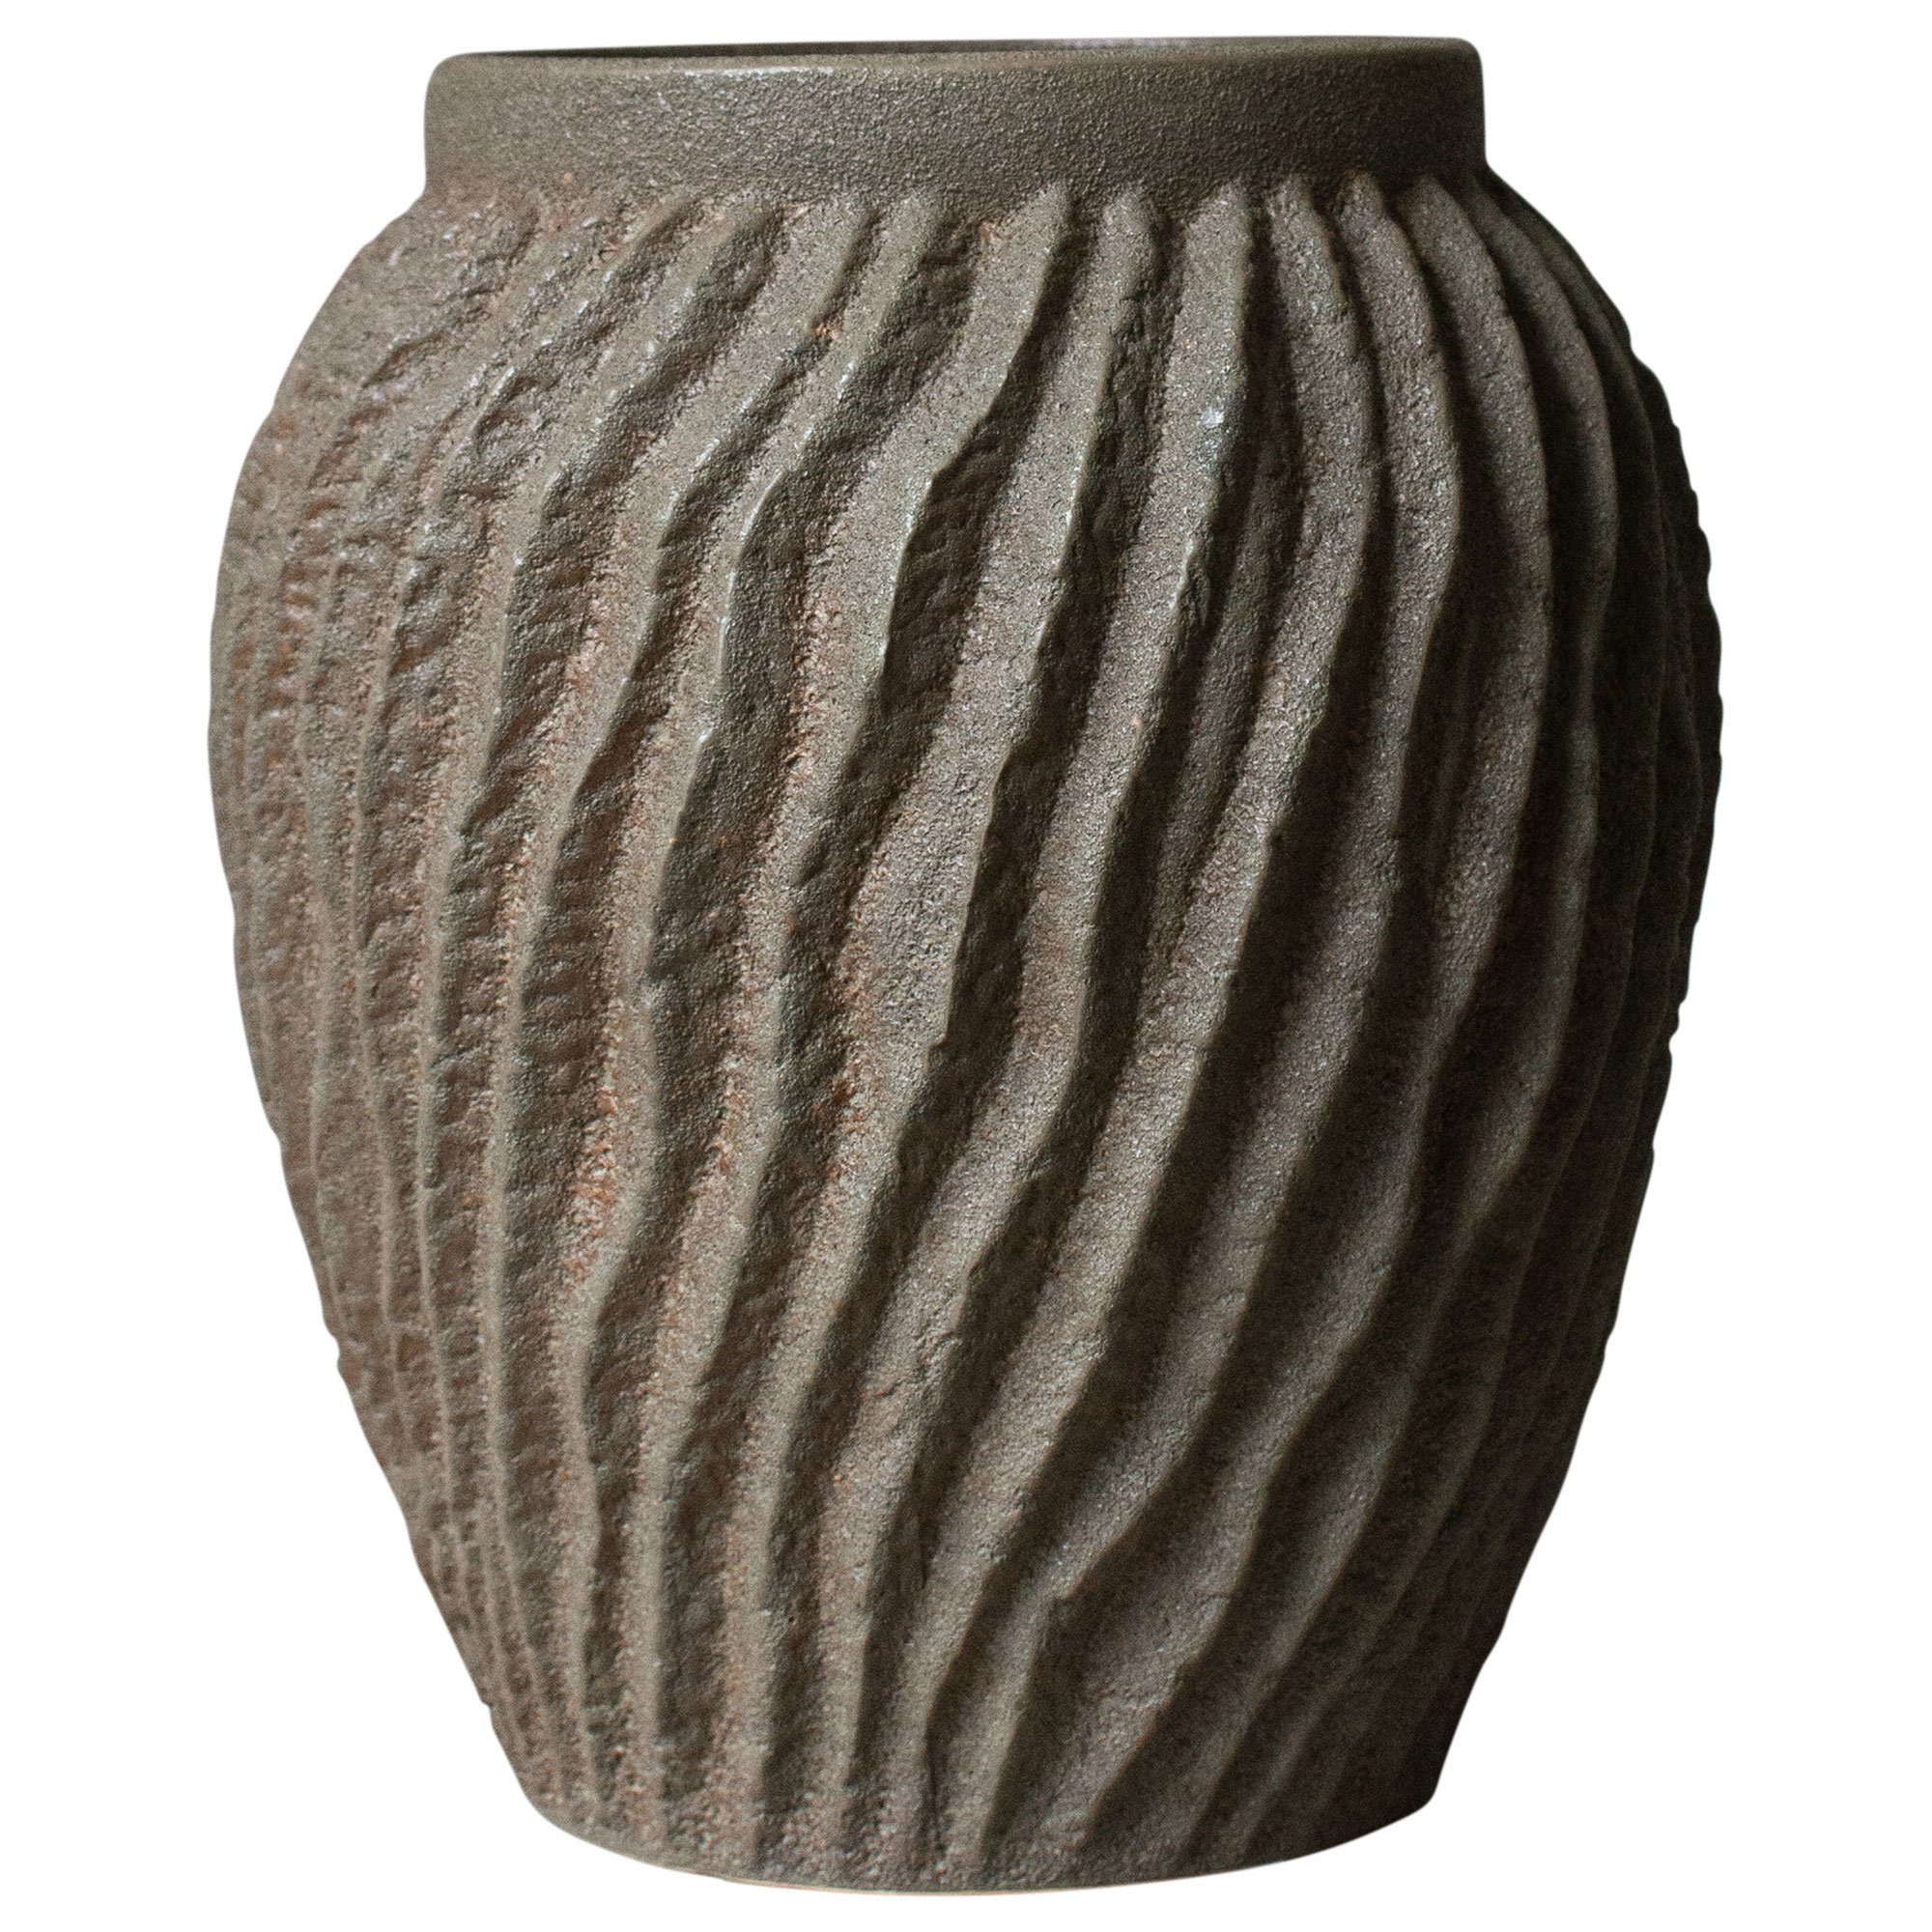 DBKD Raw vas, 29 cm, sandy dust